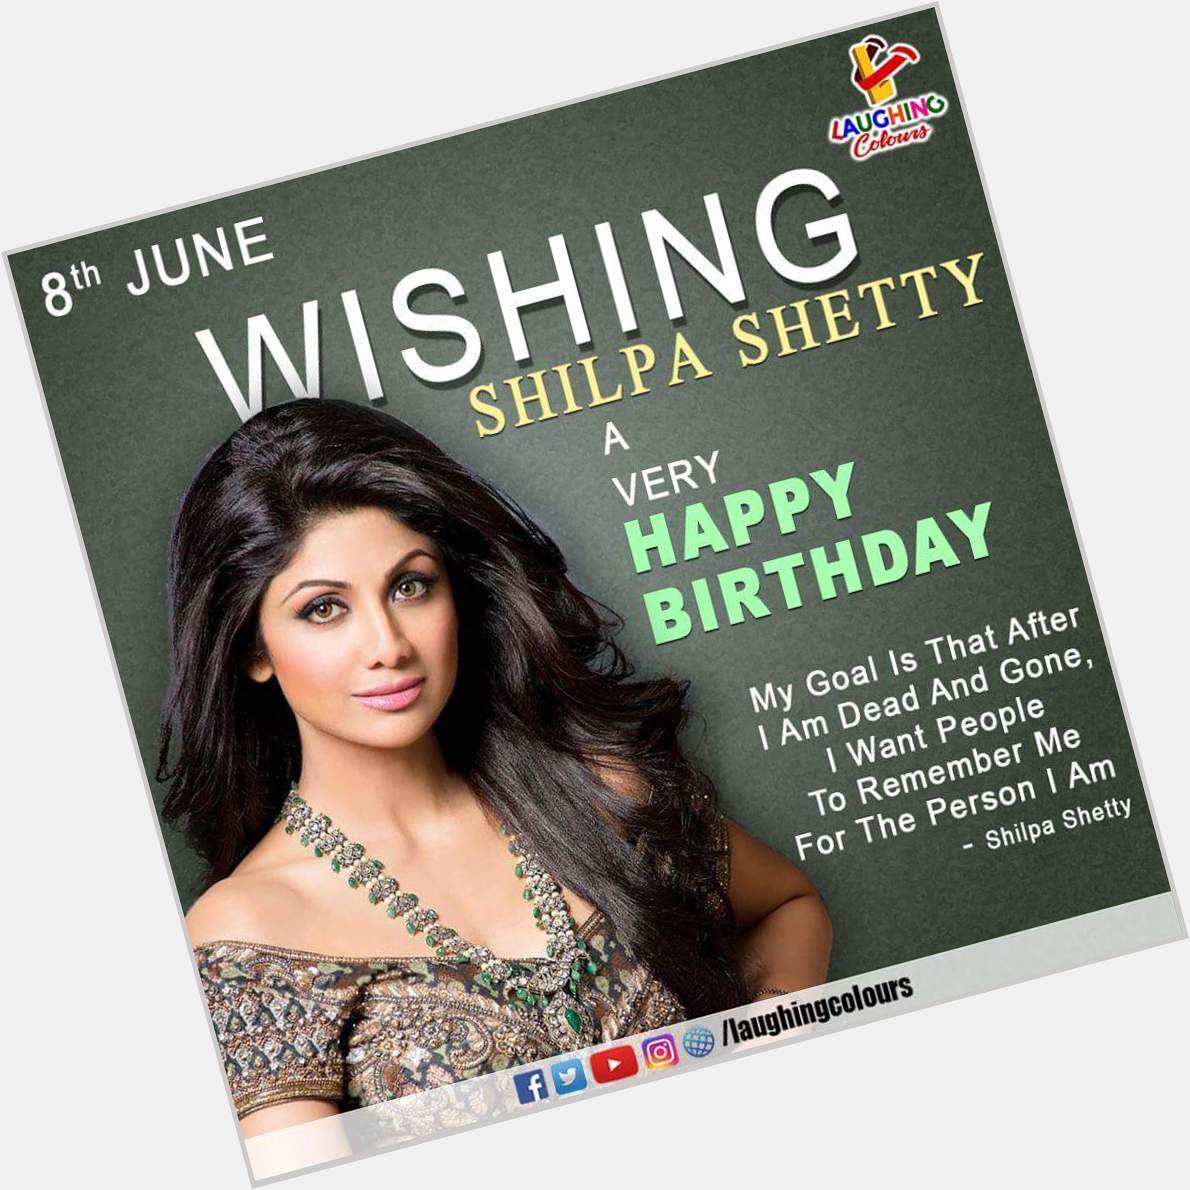  happy birthday to Shilpa shetty mam...  